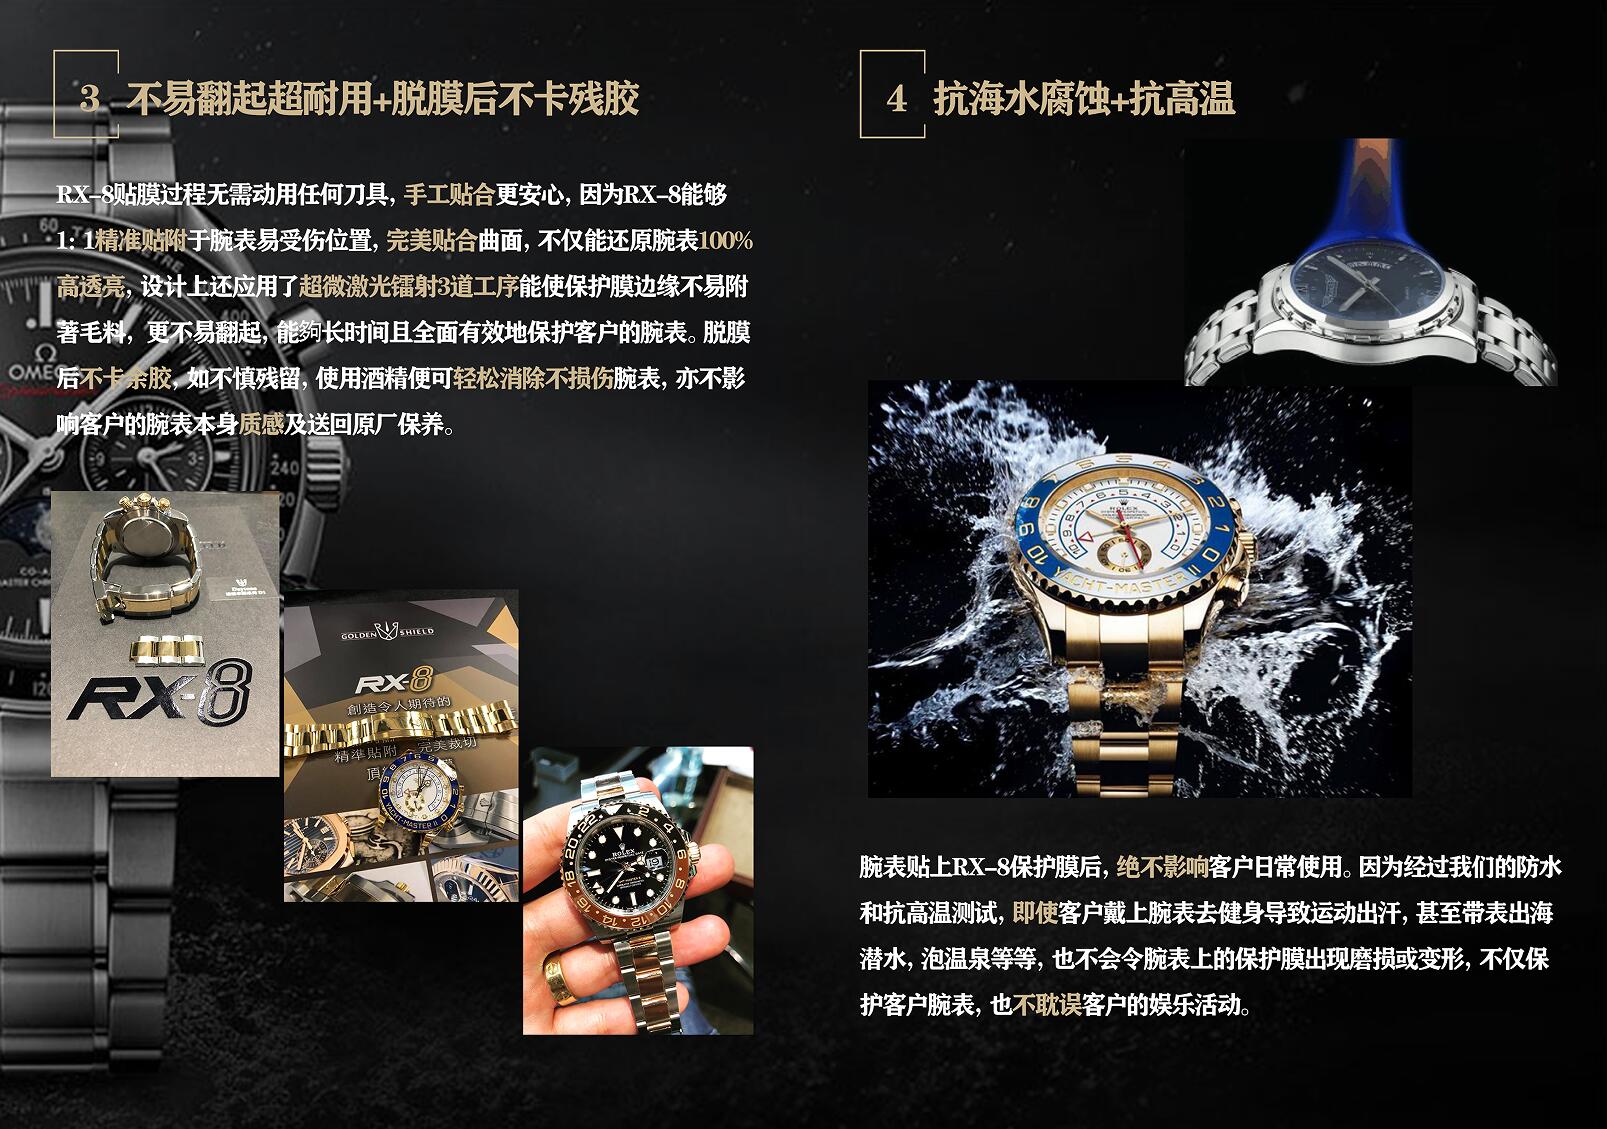 RX8贴膜适用于百达翡丽pp5726/1A （皮带款）手表保护膜 外表圈表盘表扣